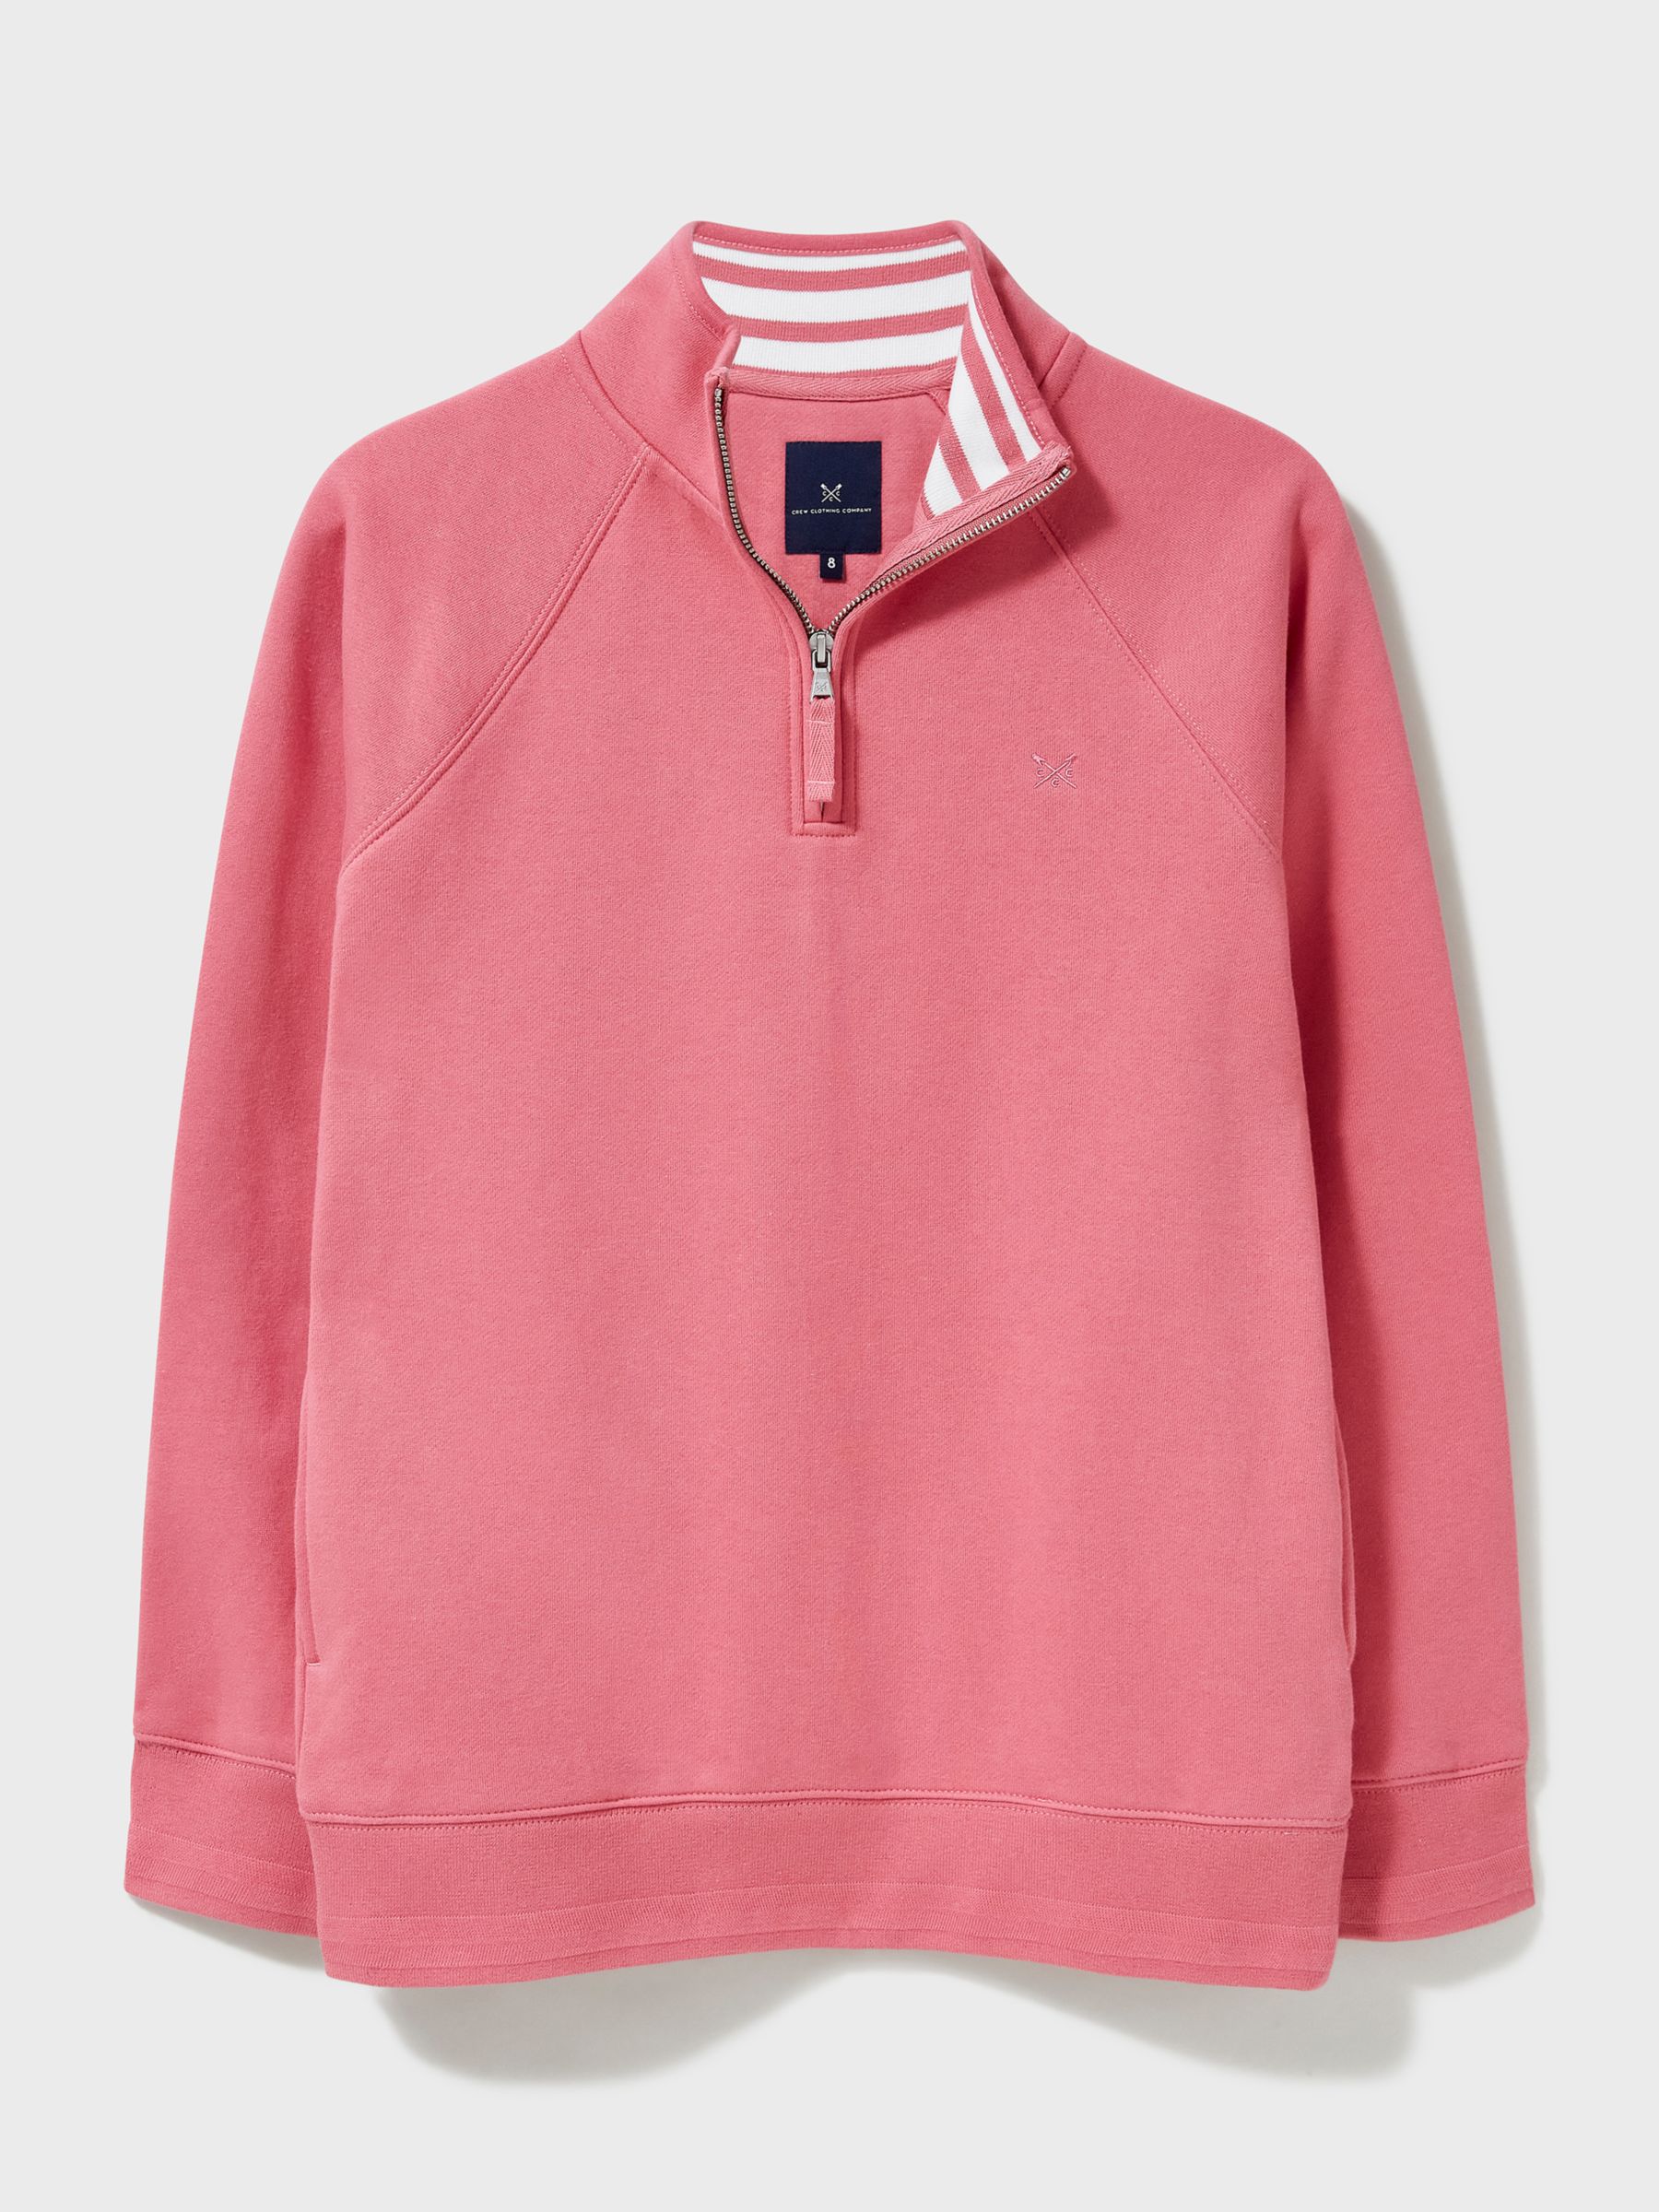 Crew Clothing Half Zip Sweatshirt, Rose Pink, 6